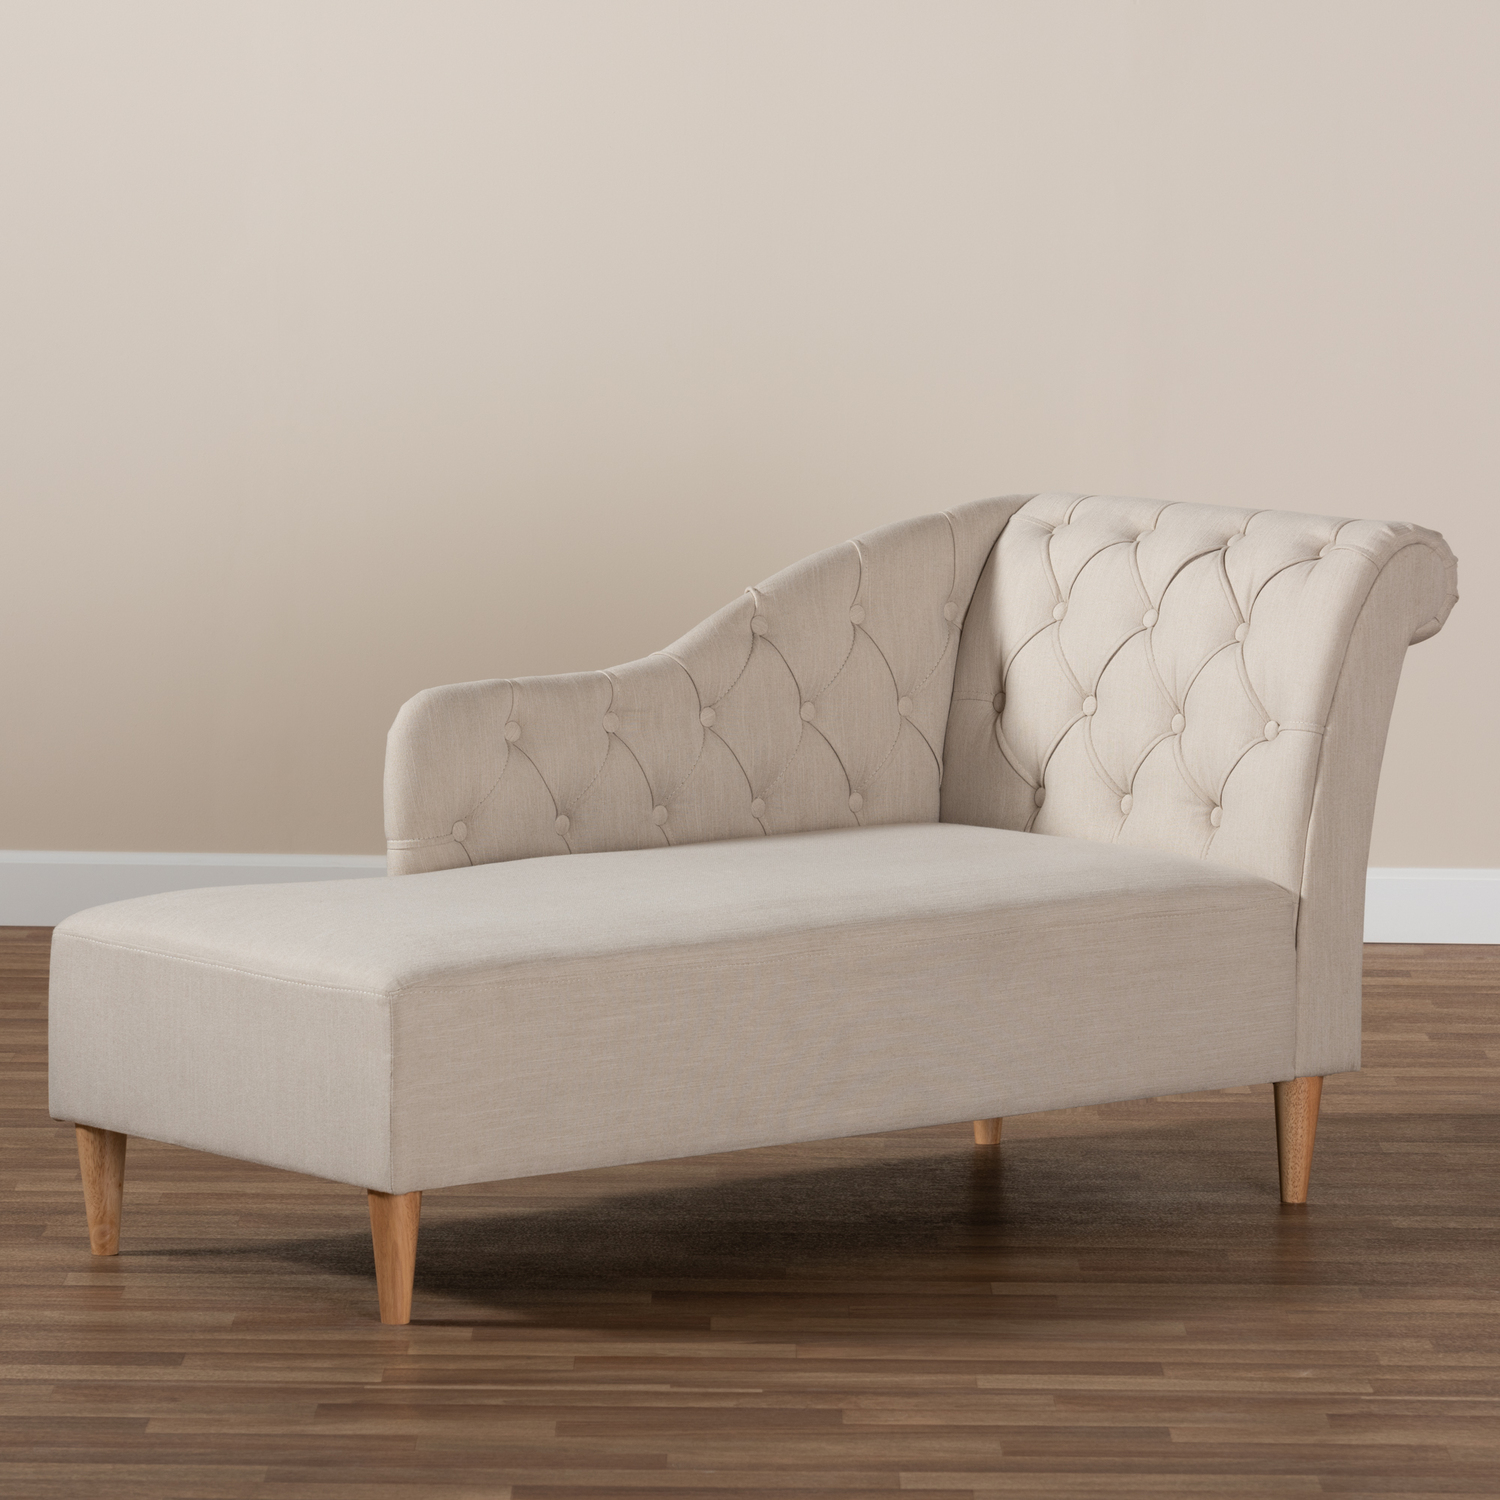 Baxton Studio Emeline Beige Upholstered Oak Finished Chaise Lounge - image 1 of 9